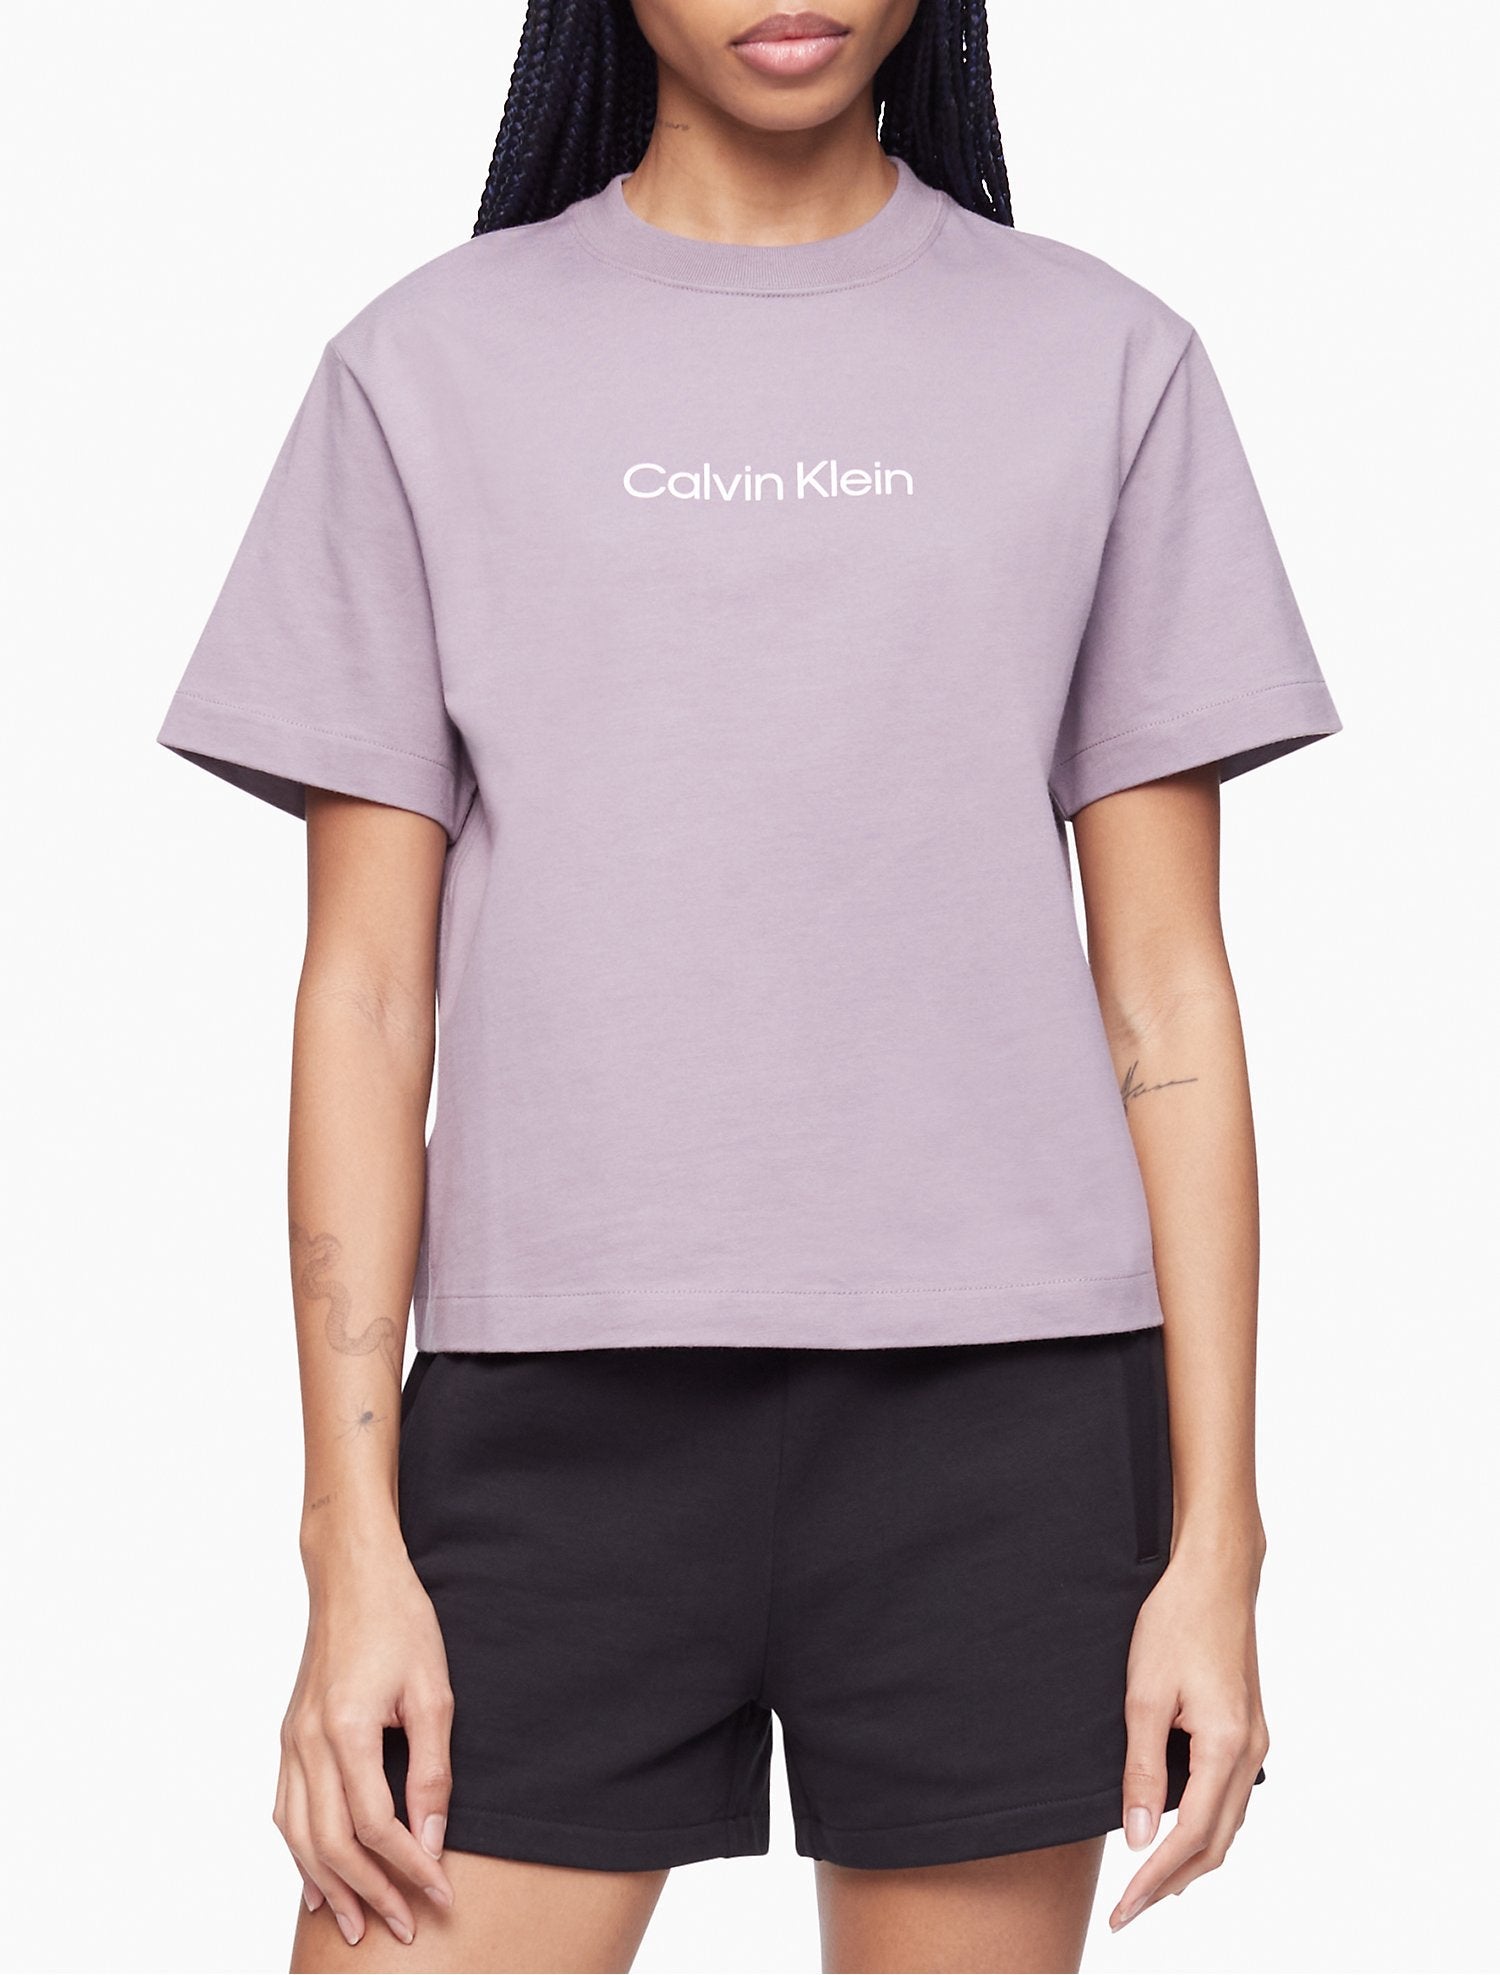 Klein T-Shirt Crewneck Logo Relaxed - Women Fit Calvin Standard